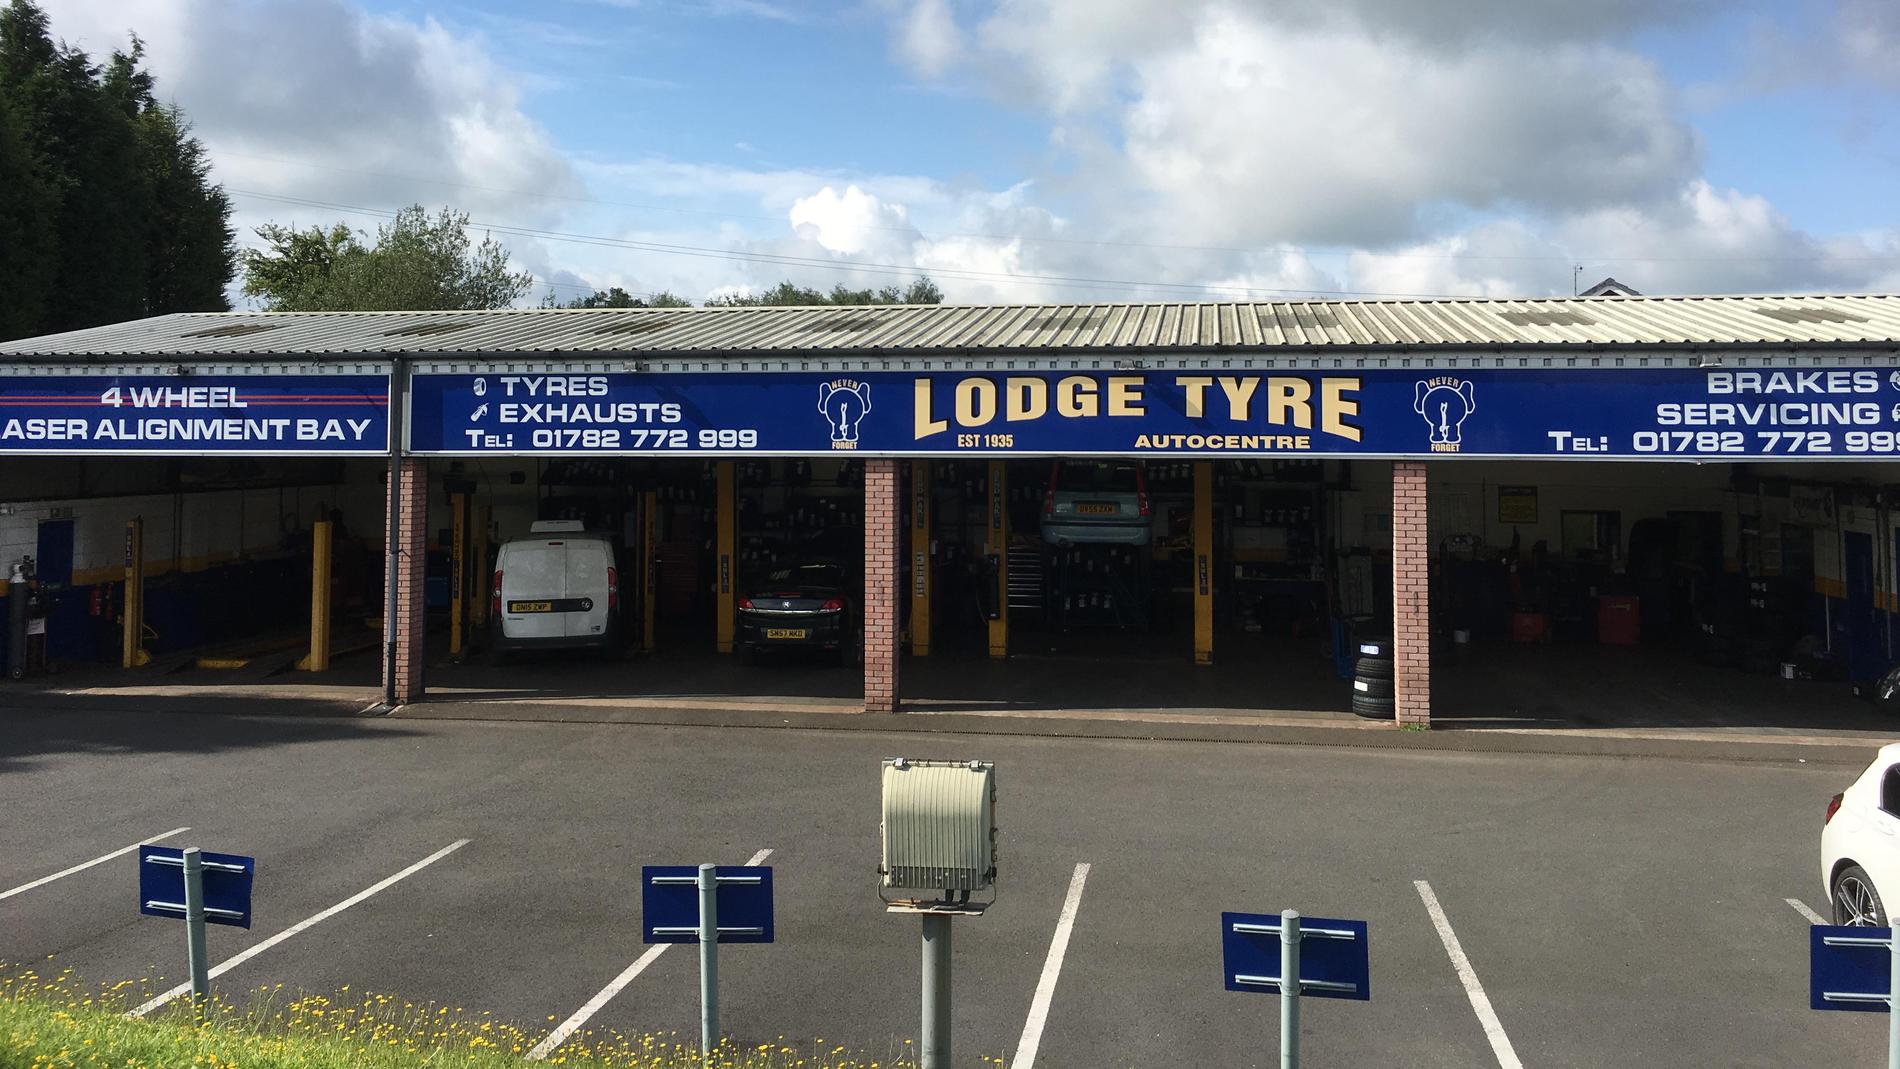 Lodge Tyre Company Limited - Talke